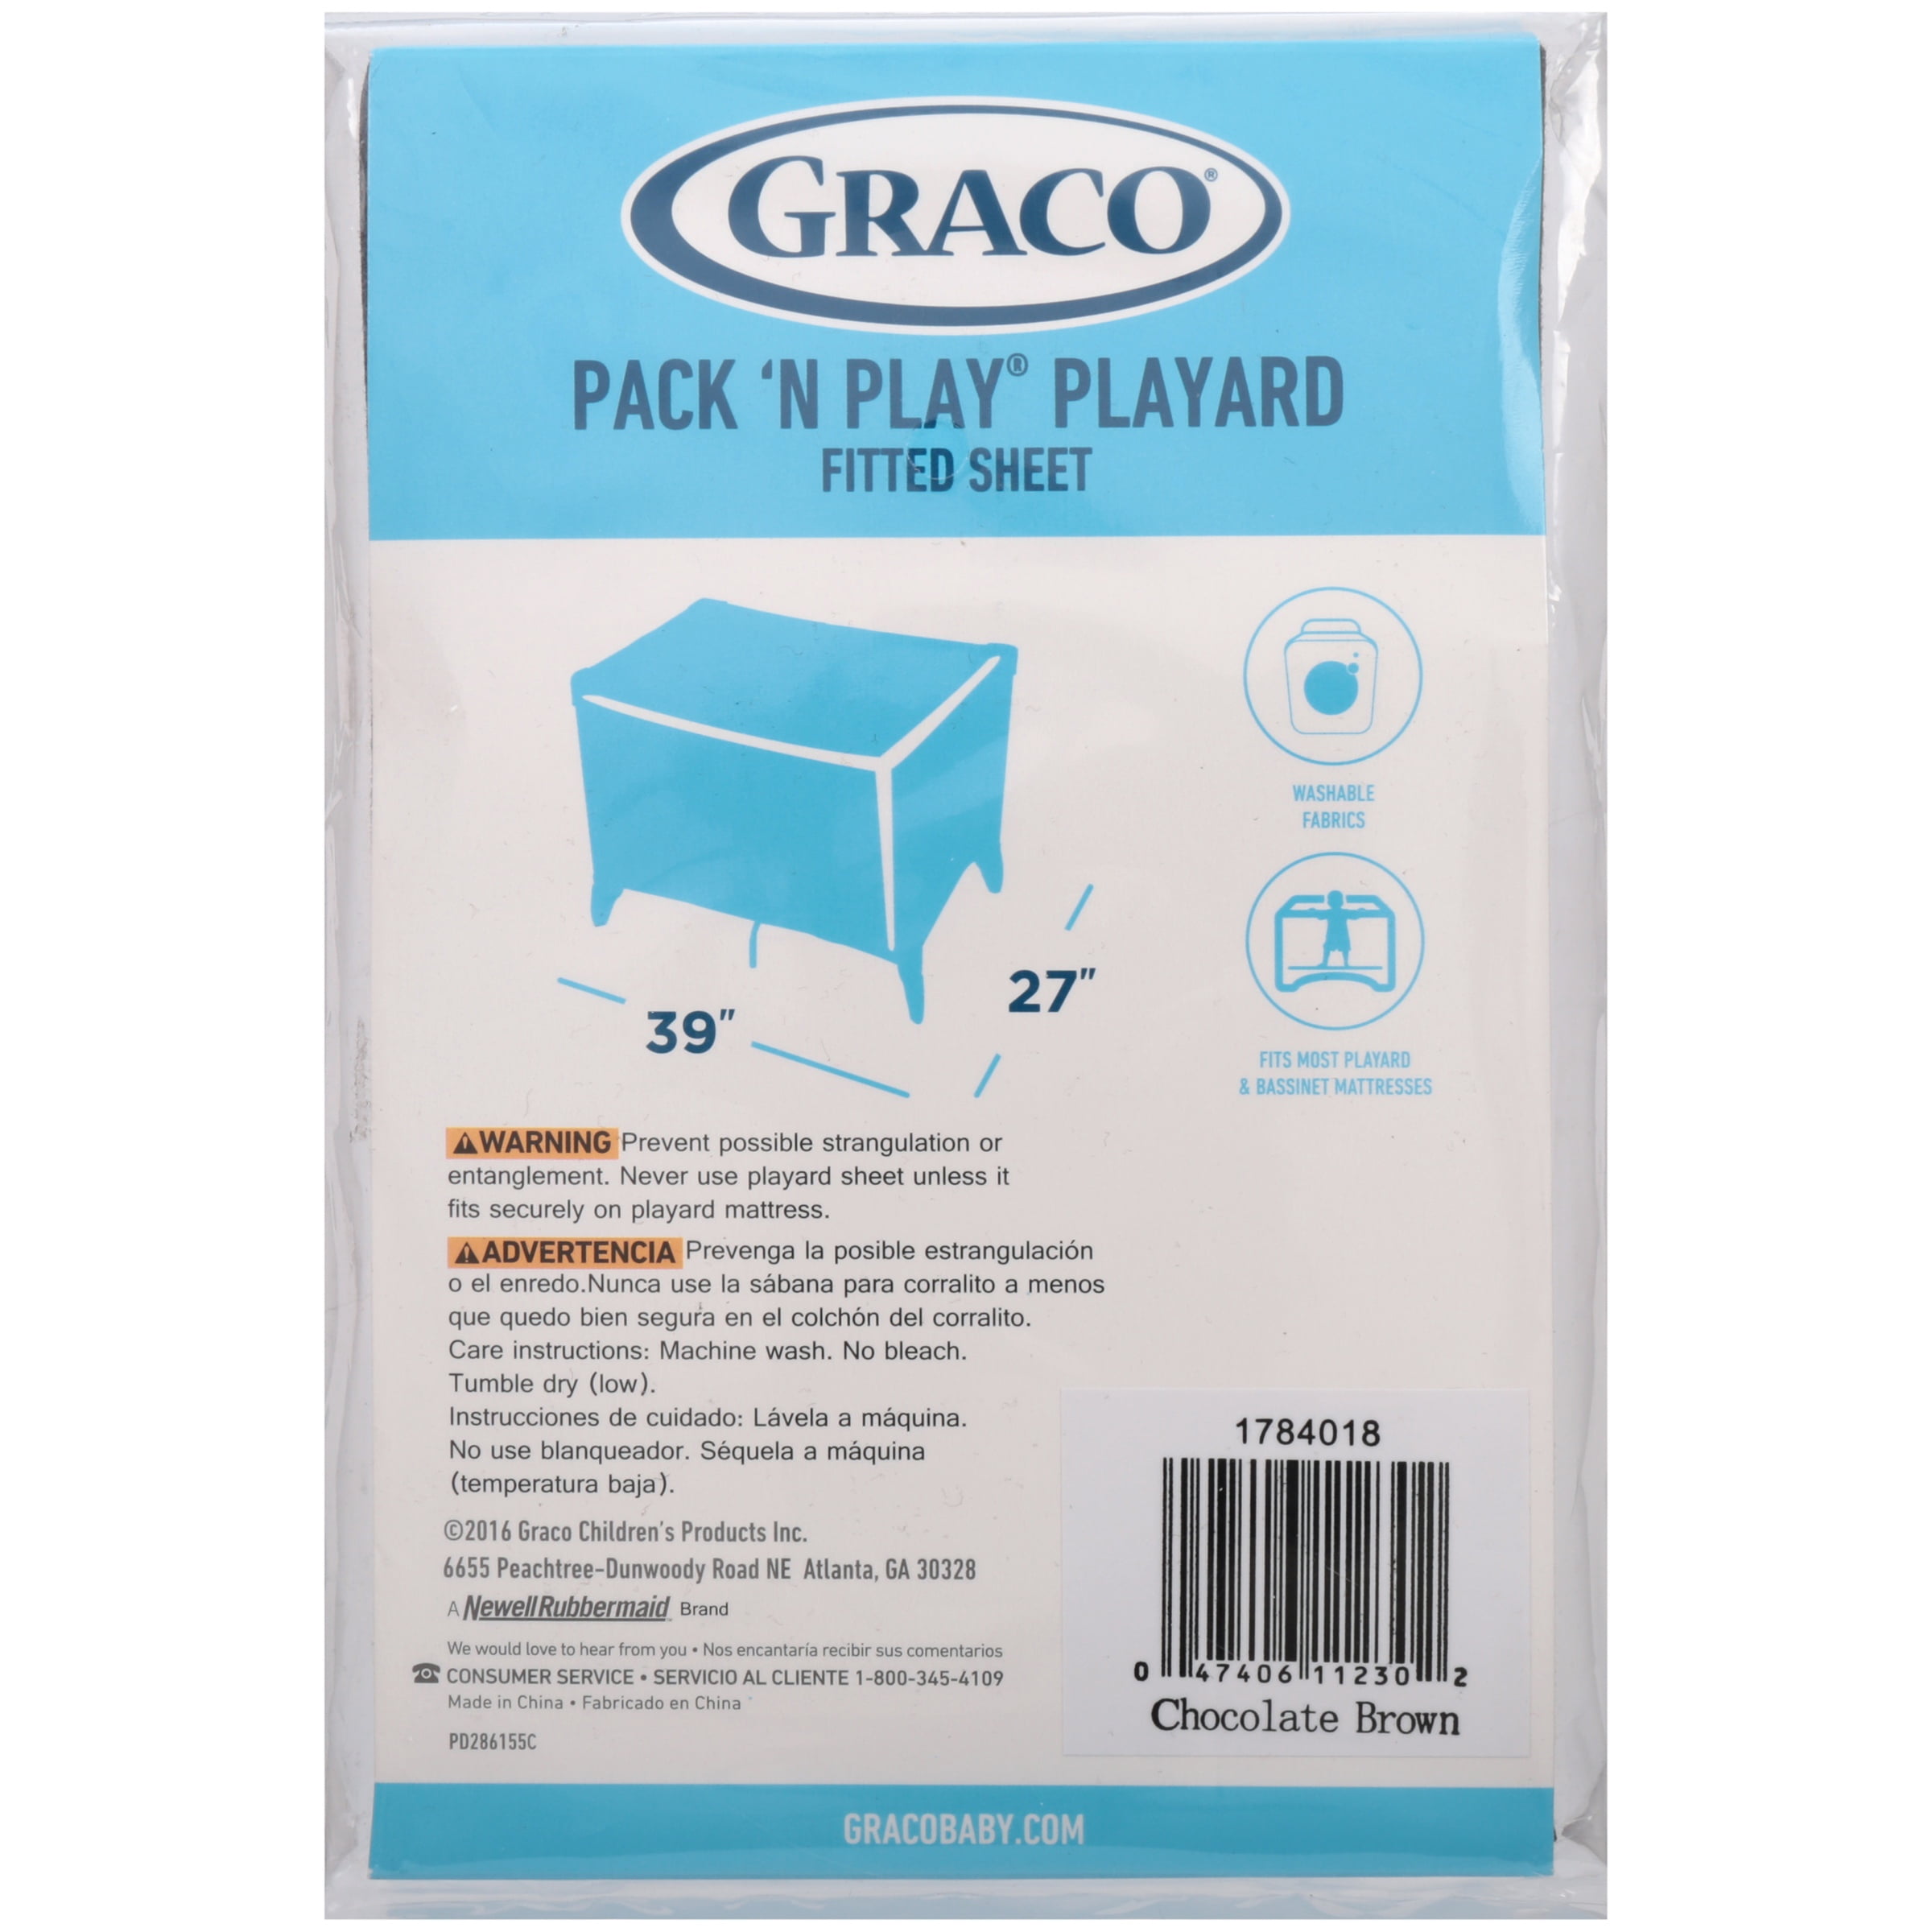 Graco Pack N Play Playard Sheets Hot Sale, 54% OFF | www.digitaldev.com.br